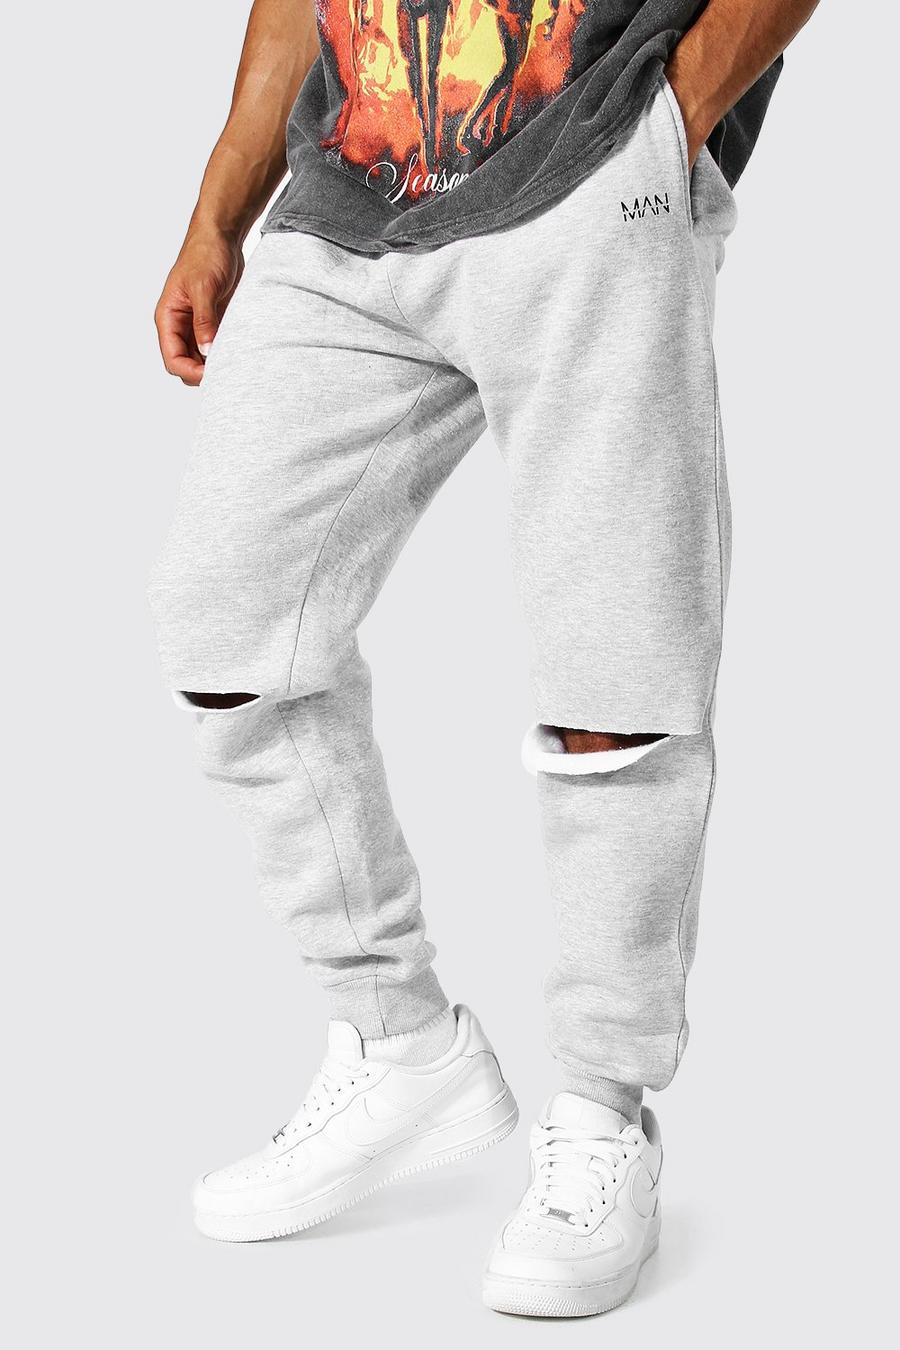 Pantaloni tuta Original Man con strappi sul ginocchio, Grey marl image number 1